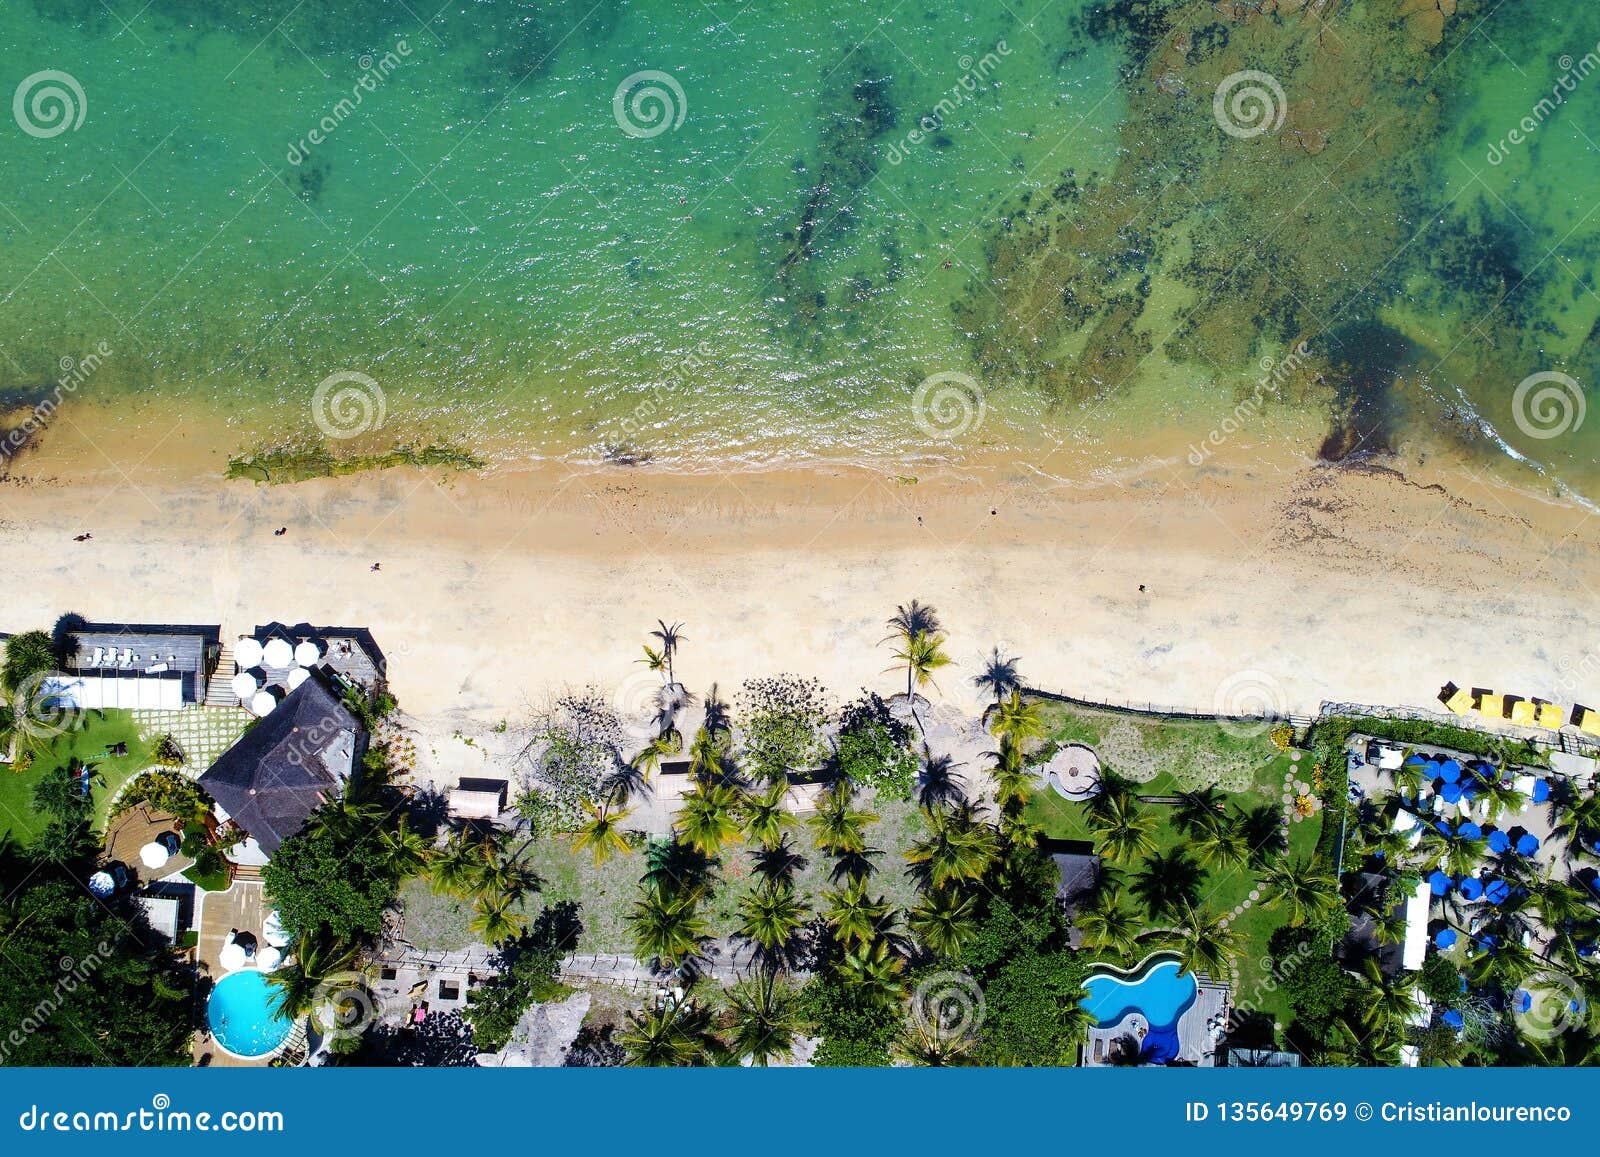 aerial view of arraial d`ajuda beach, porto seguro, bahia, brazil